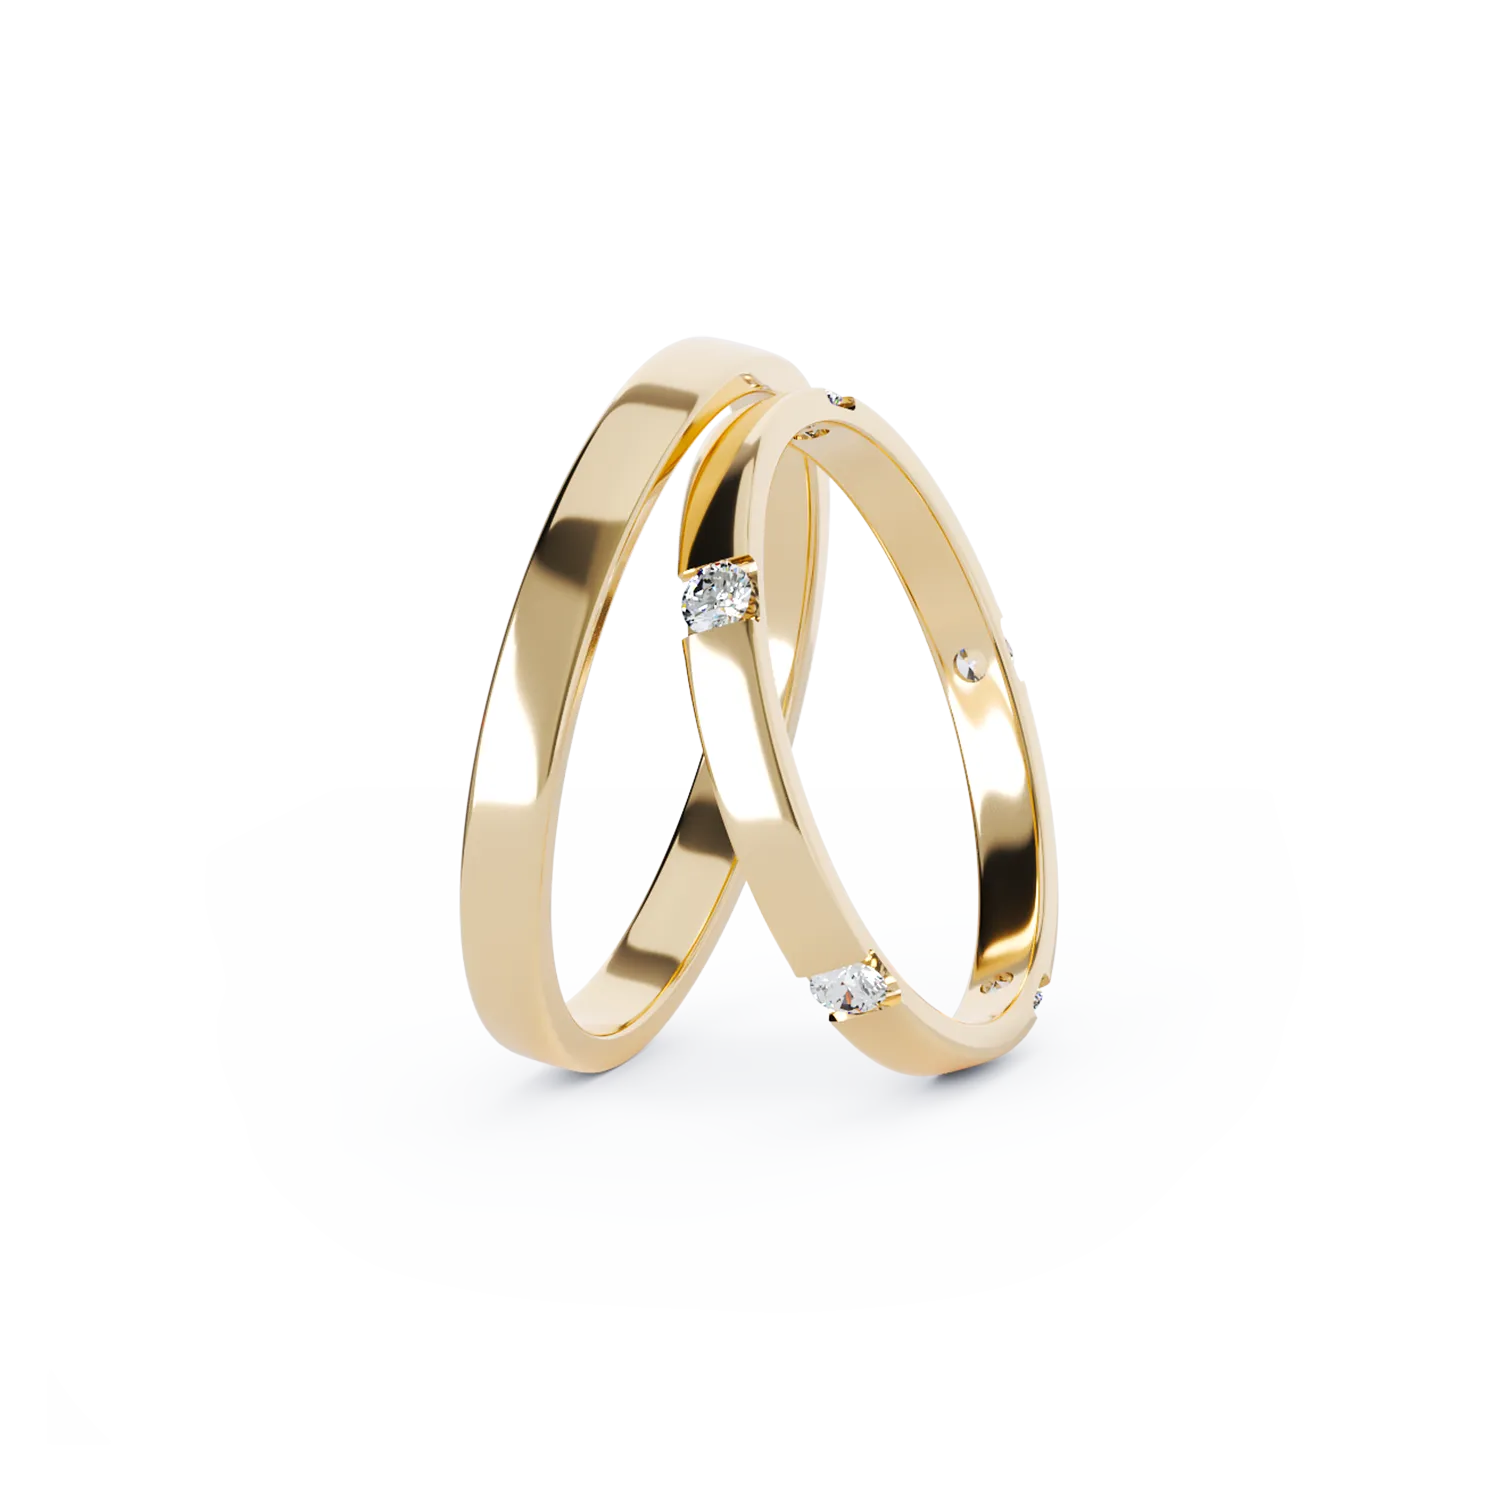 ROYAL arany karikagyűrűk